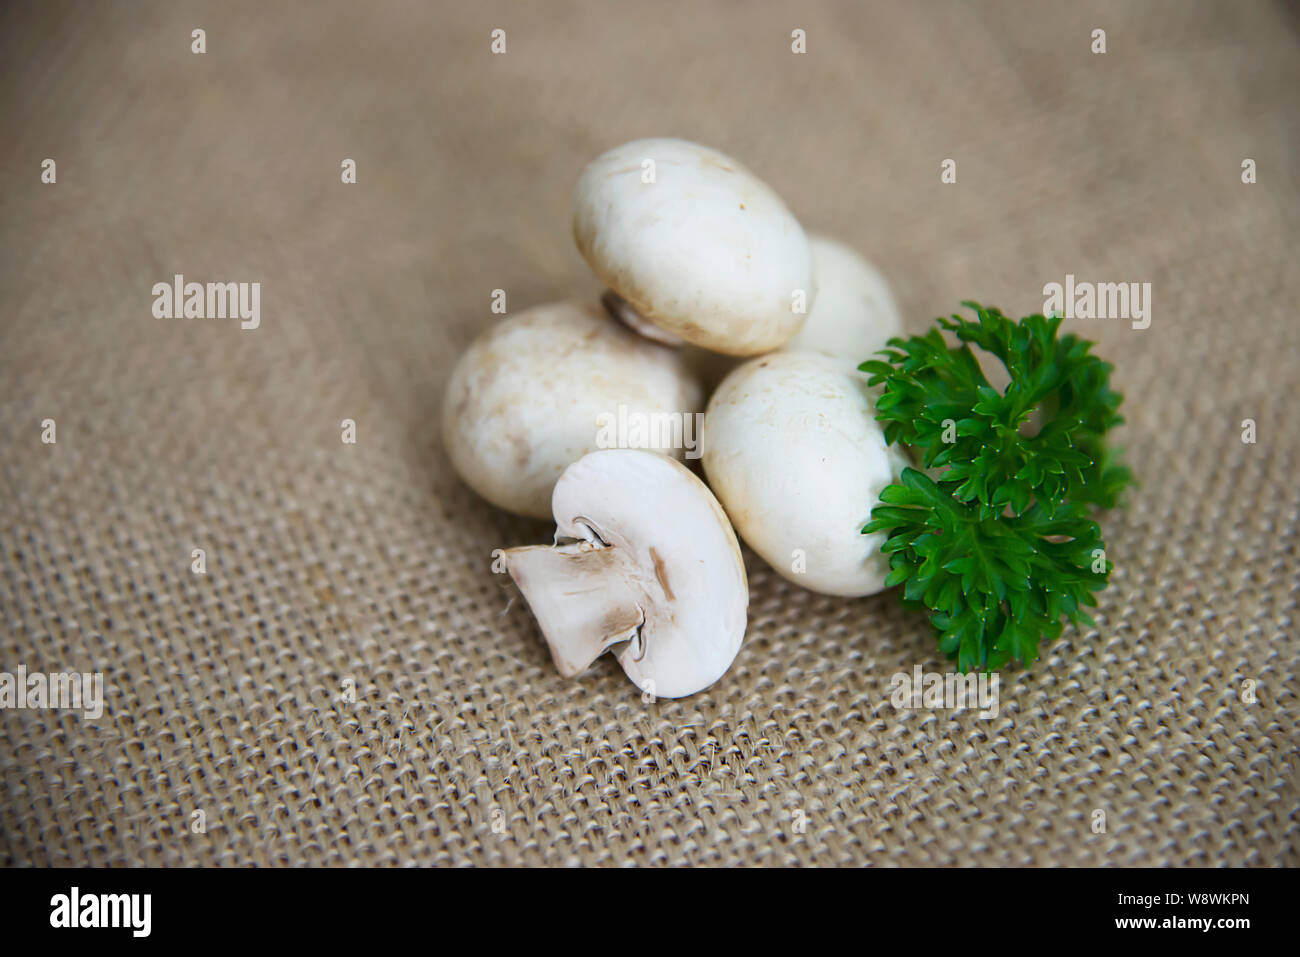 Légumes frais champignon dans la cuisine - concept de cuisine légumes champignons frais Banque D'Images